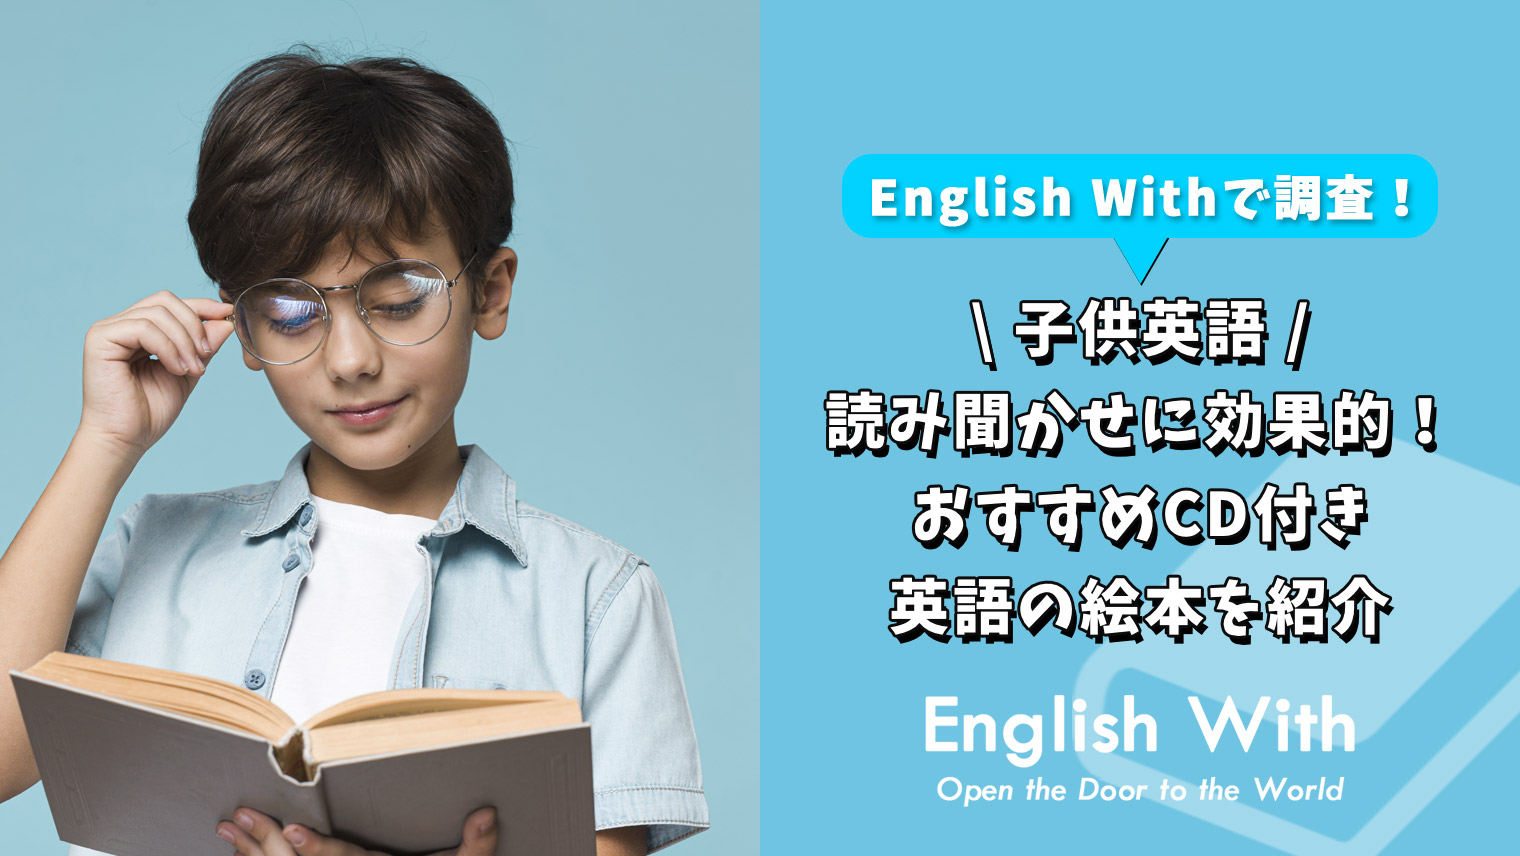 英語読み聞かせに効果的 おすすめできるcd付き絵本を紹介 英語学習メディアenglish With